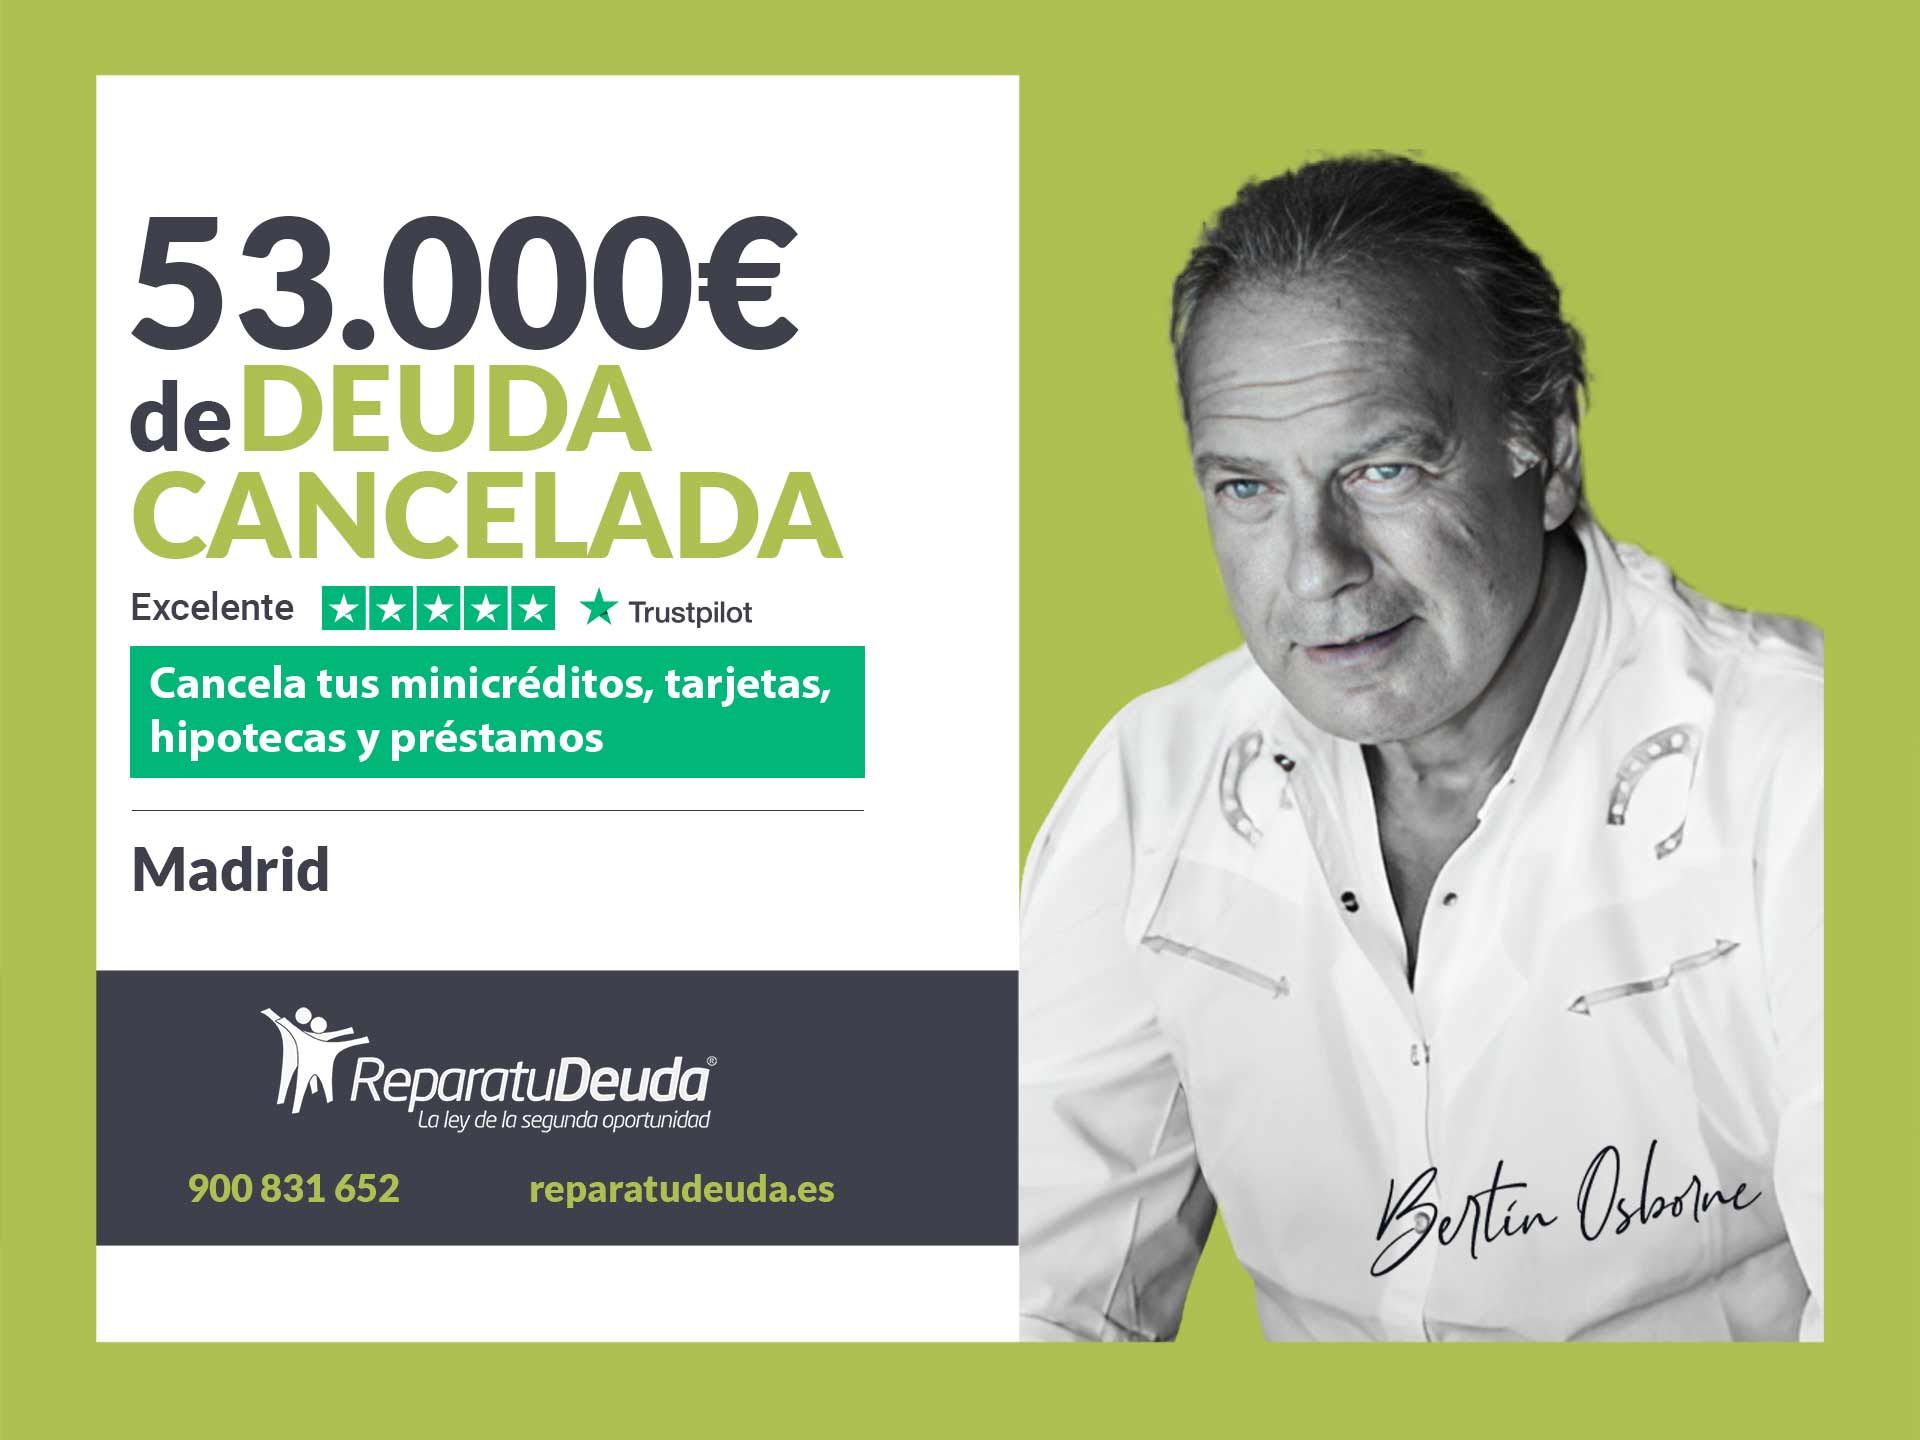 Repara tu Deuda Abogados cancela 53.000? en Madrid con la Ley de la Segunda Oportunidad